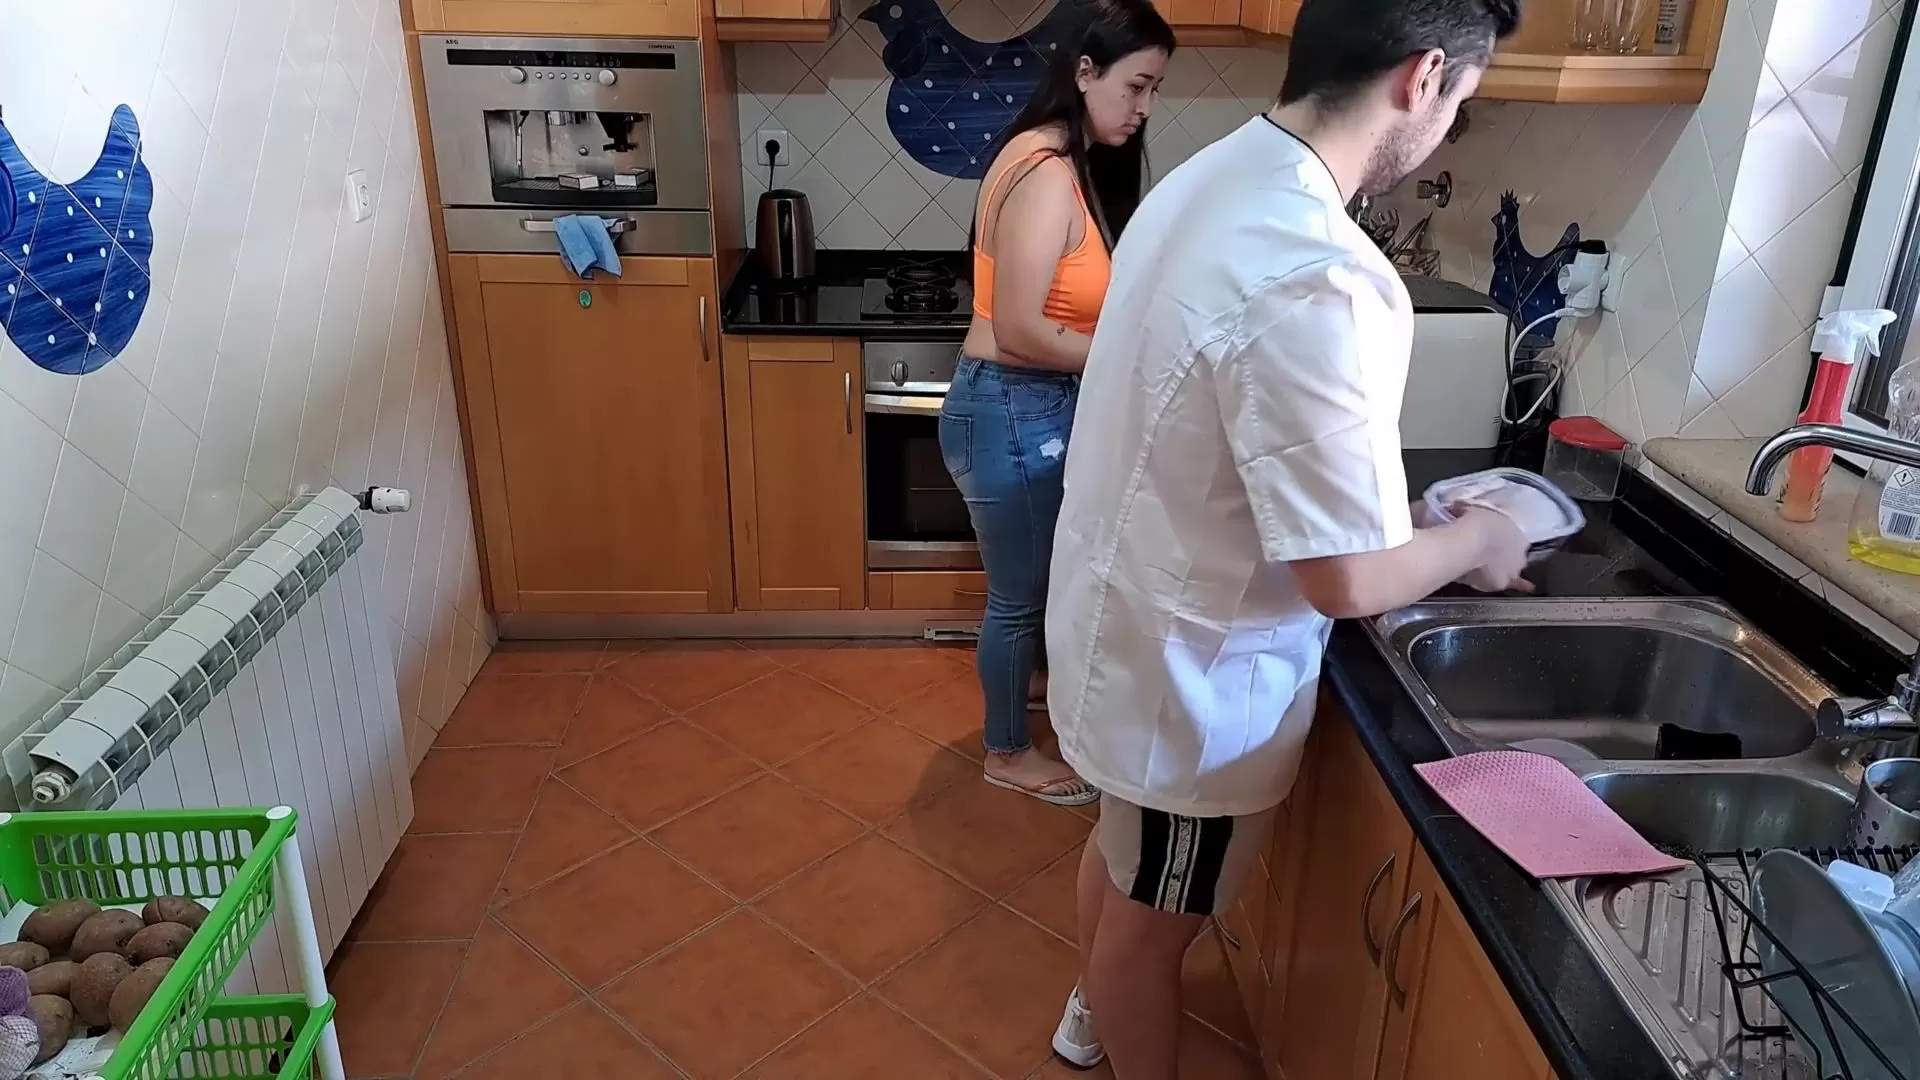 La moglie copula lo chef durante il corso di cucina e sborra più volte guarda online foto foto